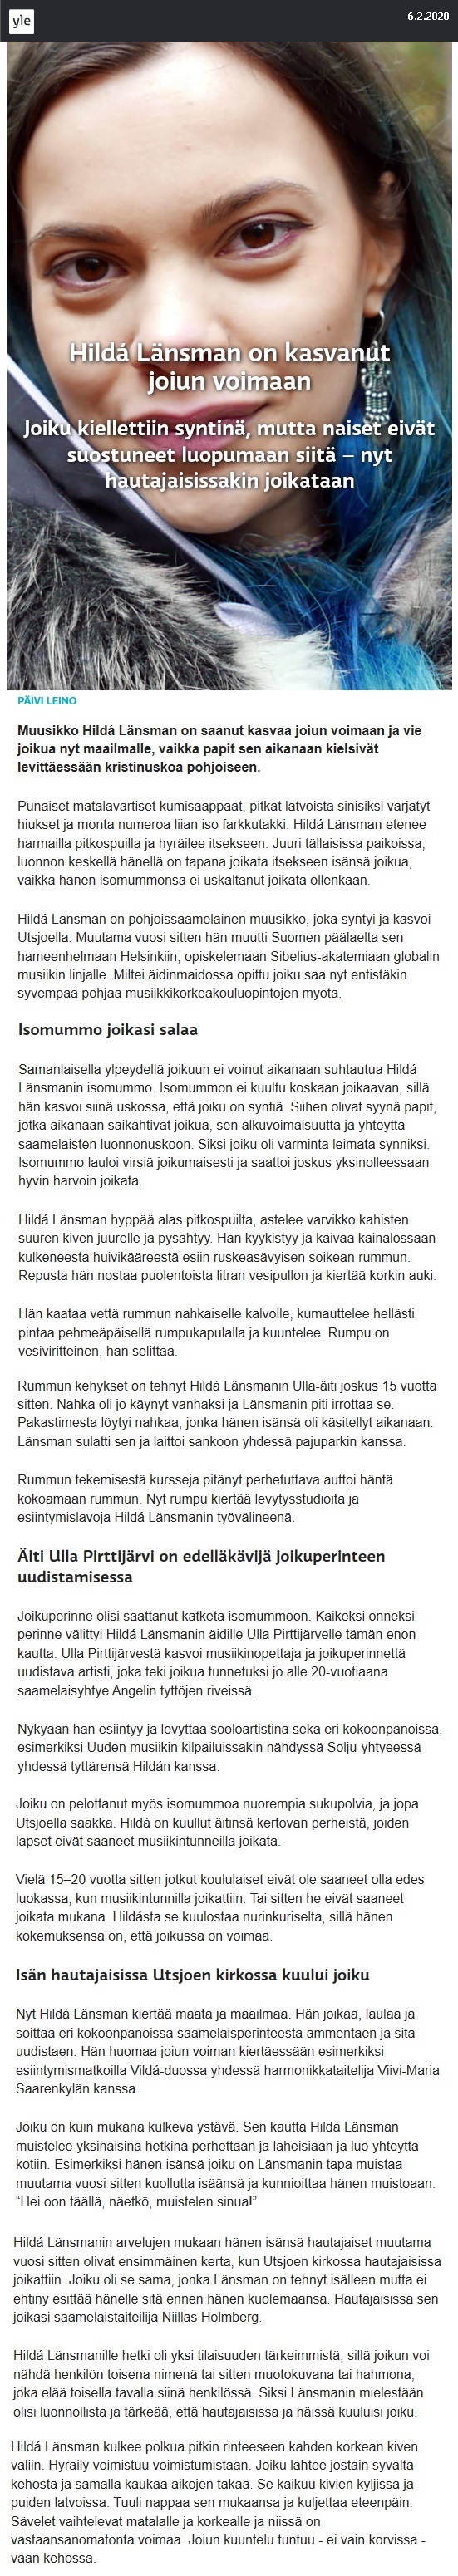 Yle, Dokumentit (Finland), 6.2.2020